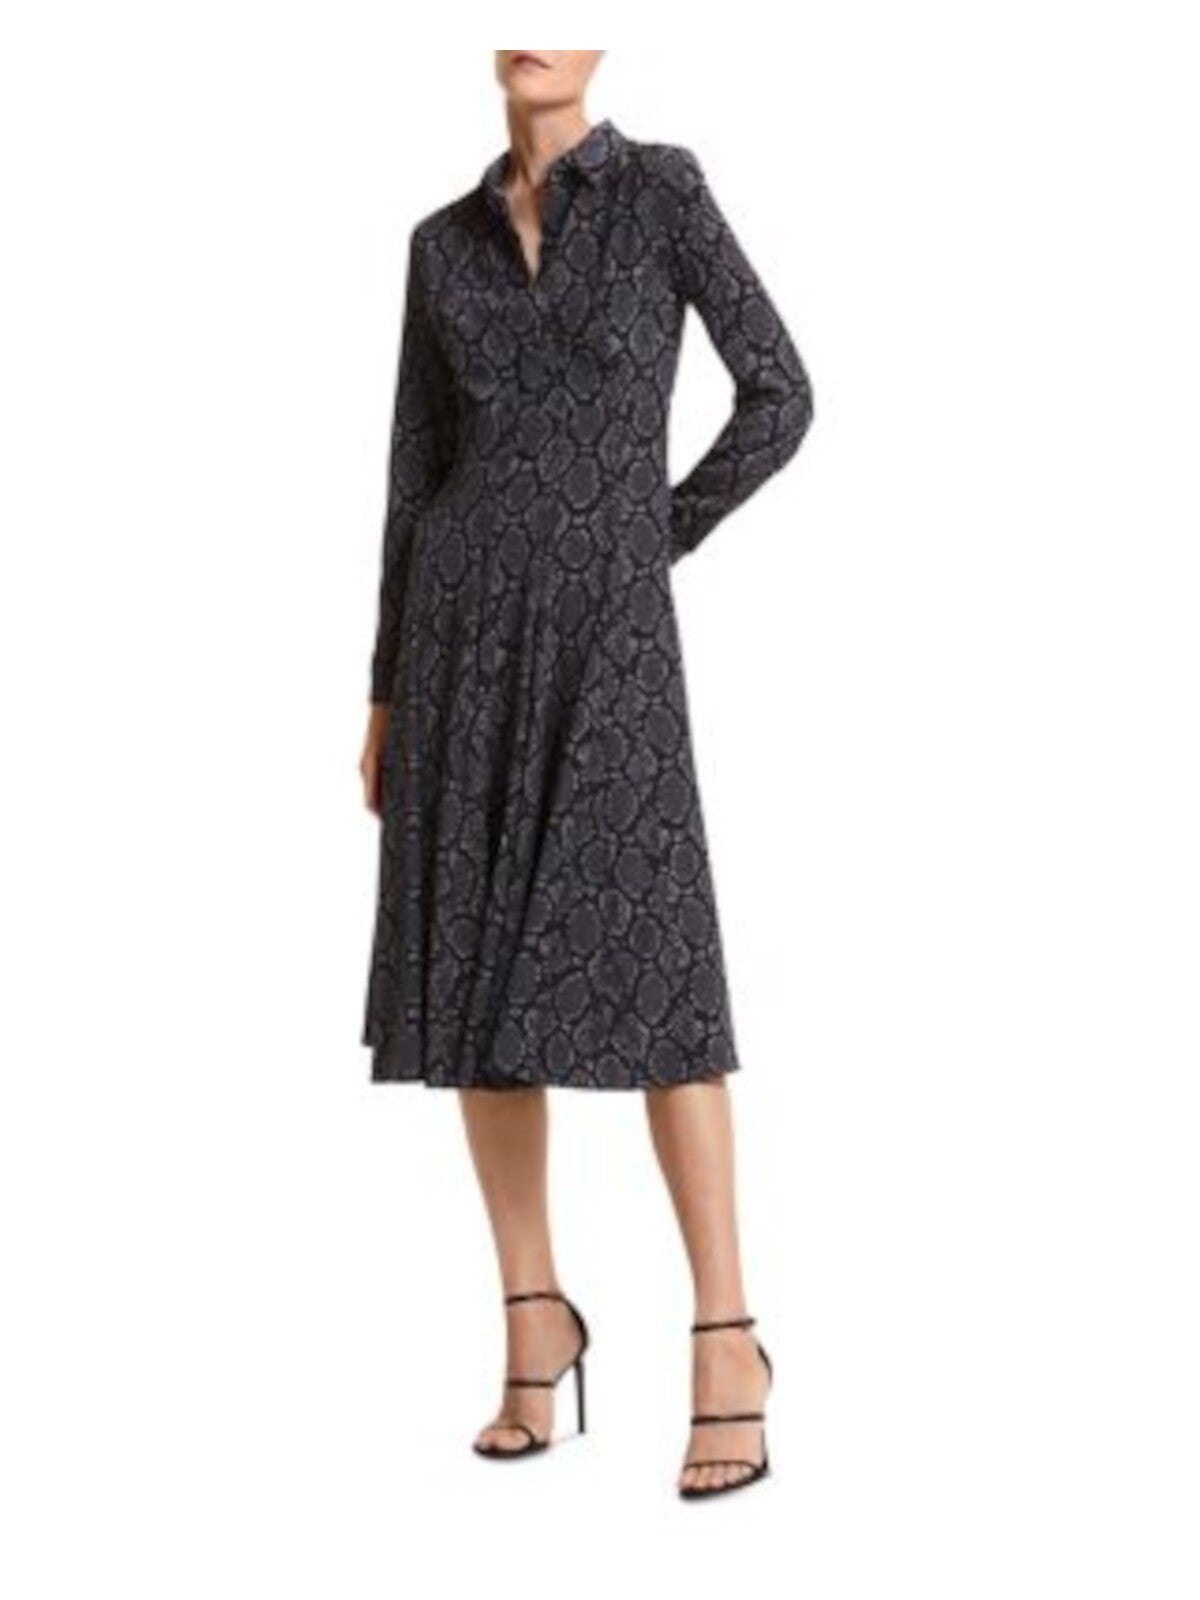 MICHAEL KORS Womens Gray Zippered Button Top Godet Skirt Cuffed Sleeve V Neck Knee Length Wear To Work Shift Dress 8